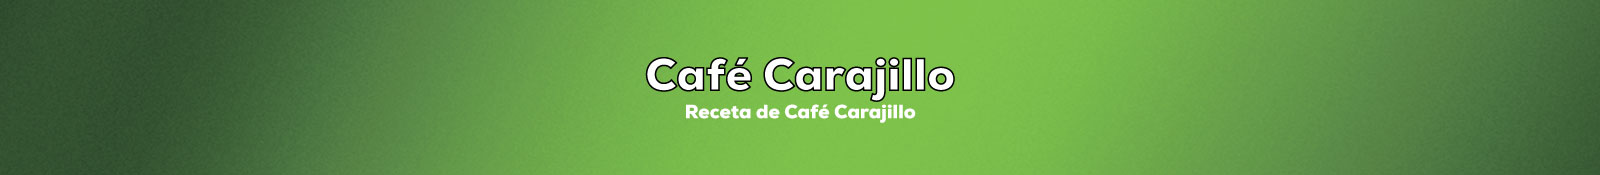 Preparar Café Carajillo